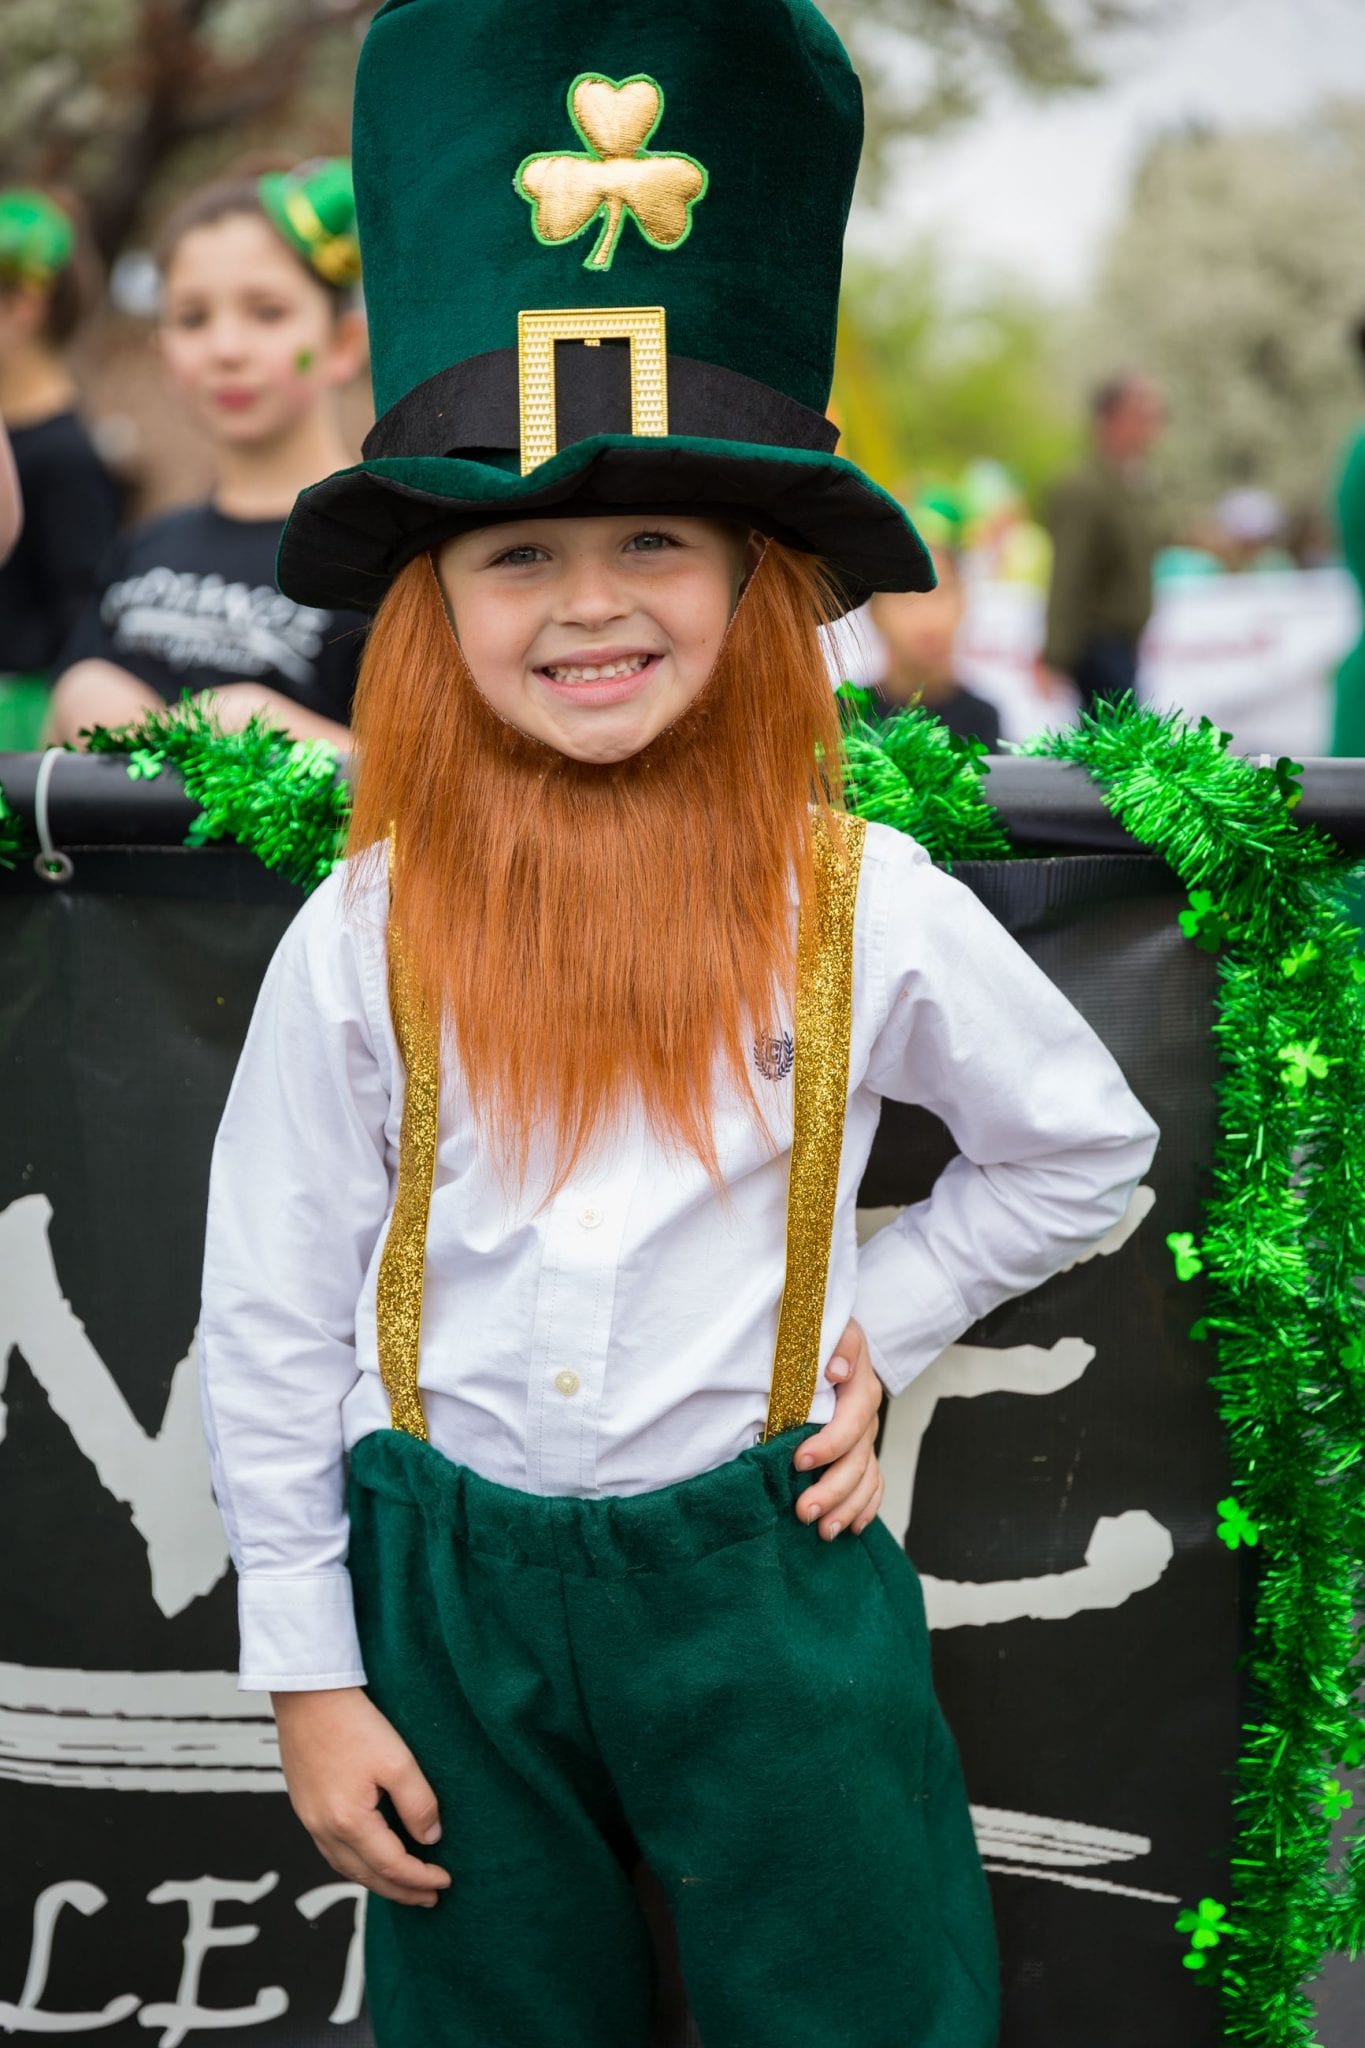 St. Patrick's Day Festival in Dublin - Visit Tri-Valley